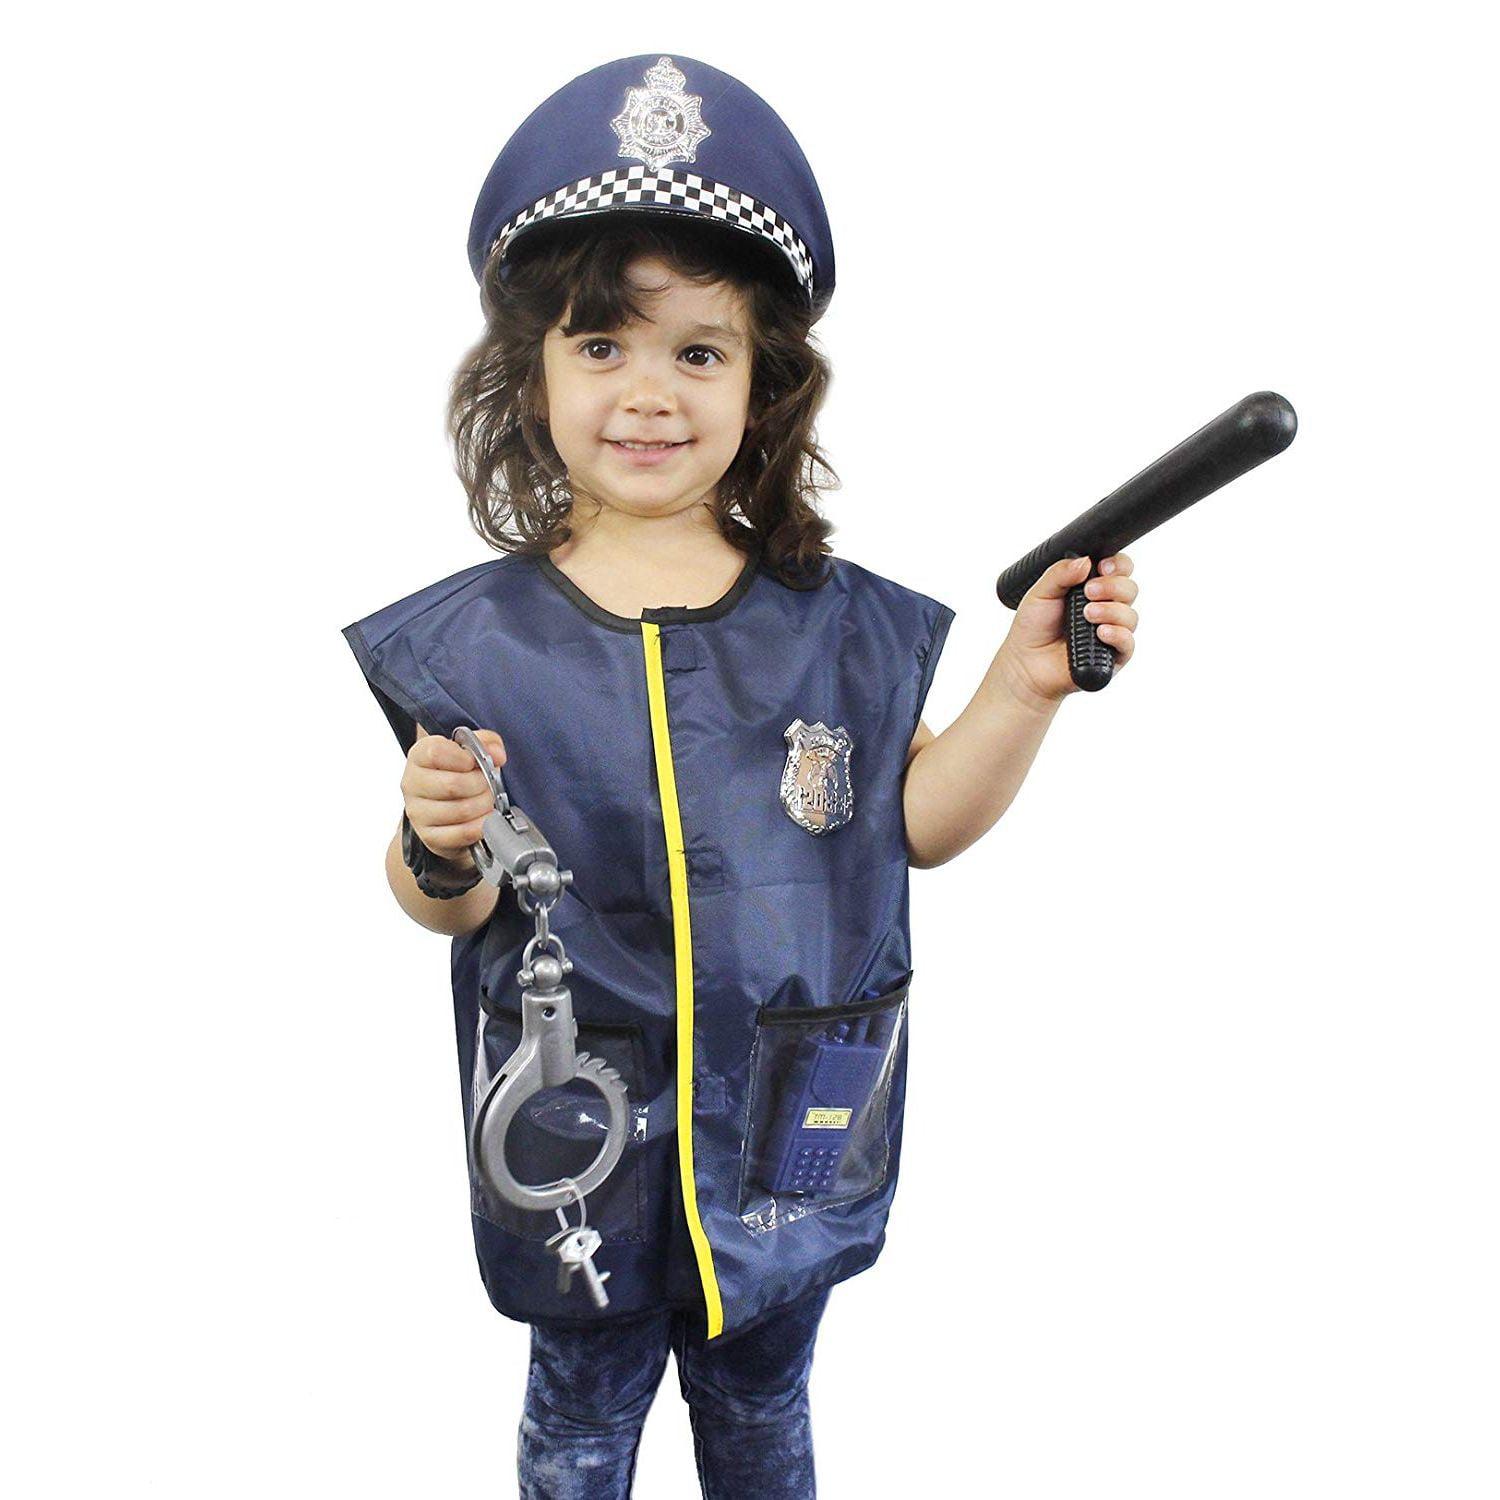 Kids Preschool Funny Pretend Play Police Helmet Hat Fancy Costume Role Play 